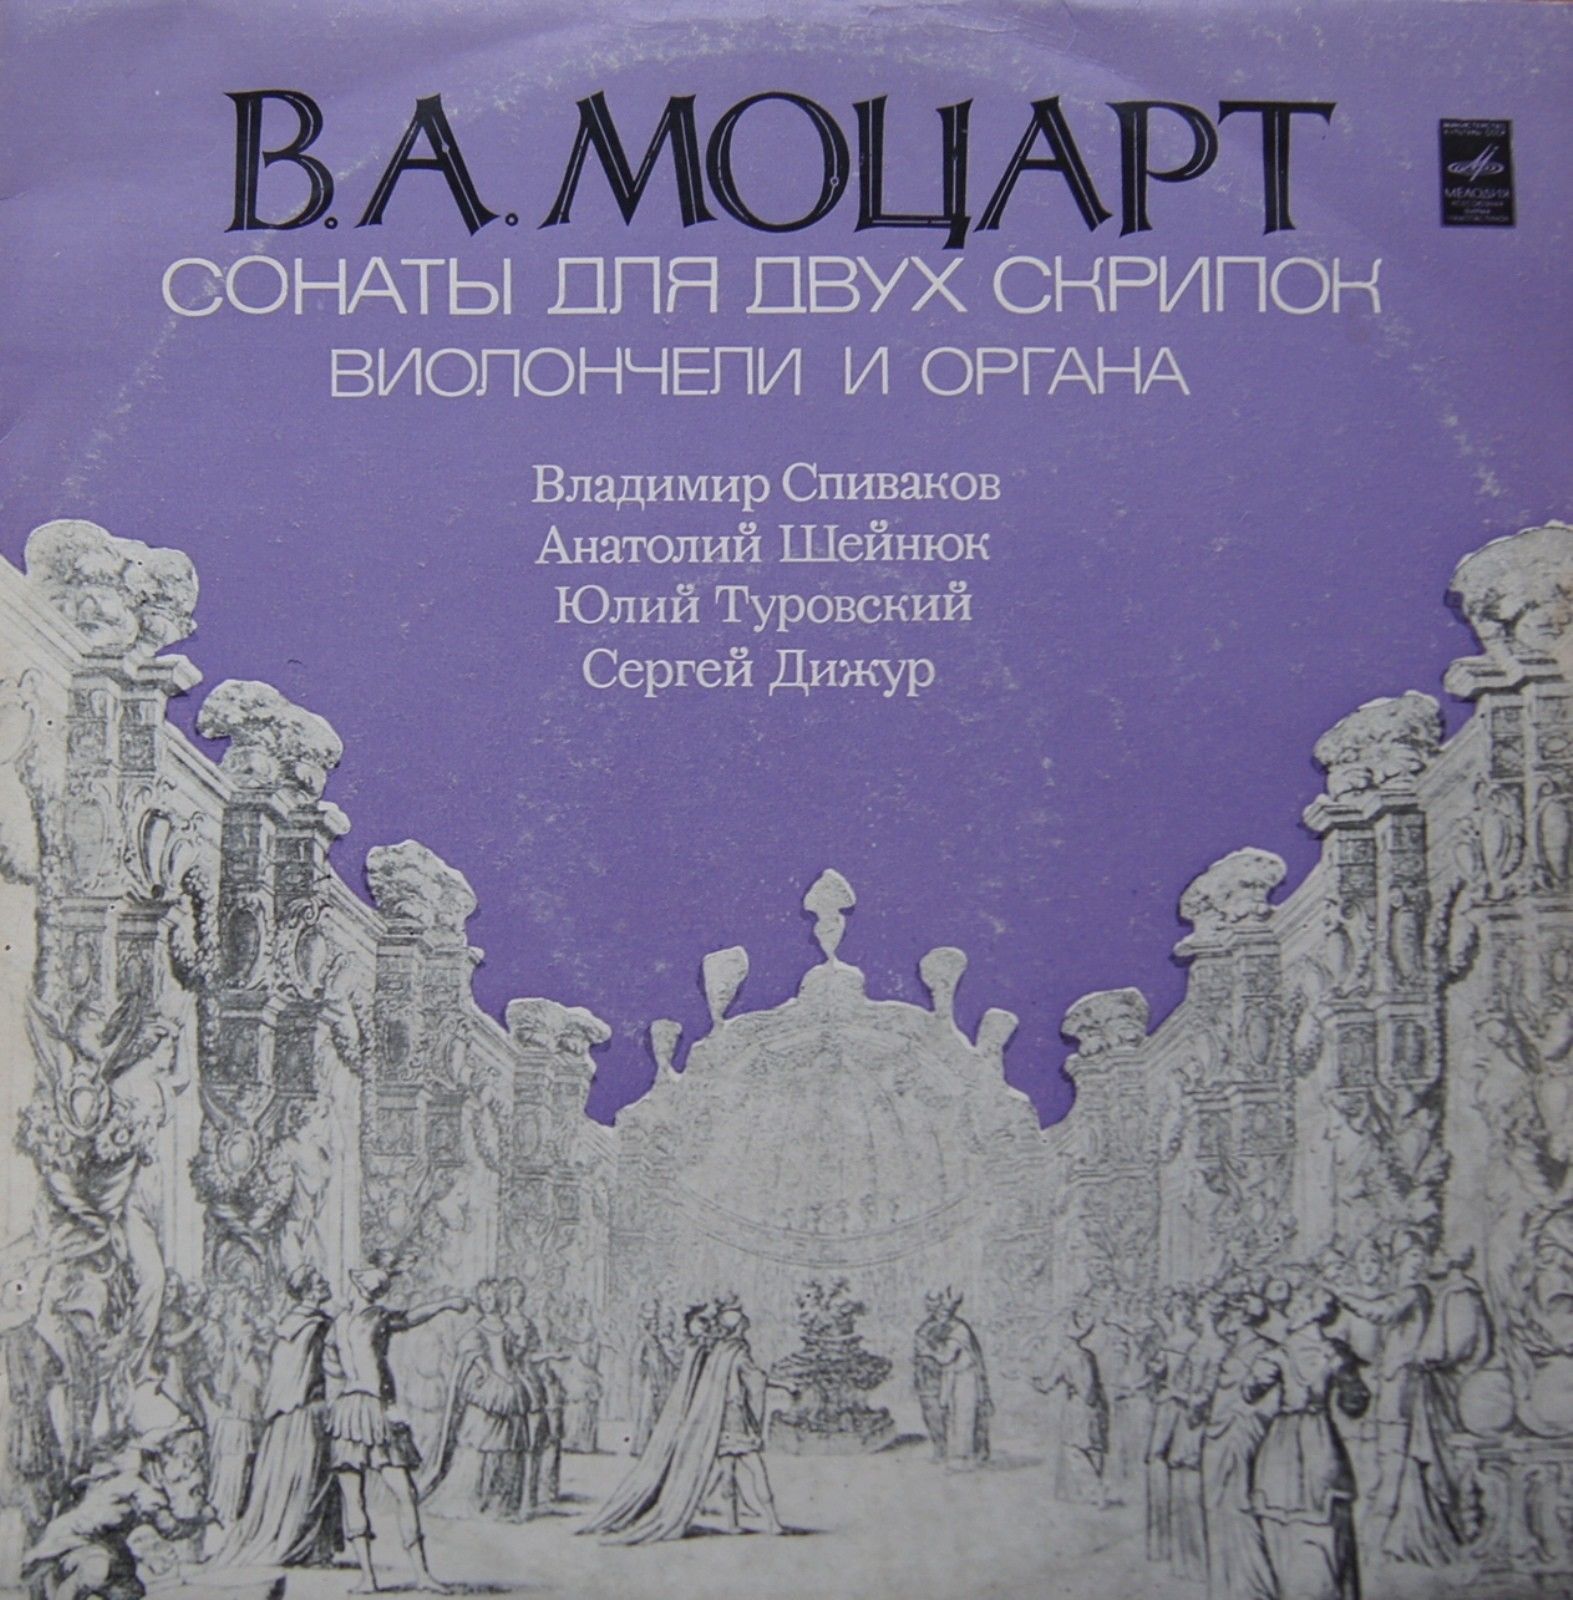 В. А. Моцарт. Сонаты для двух скрипок, виолончели и органа